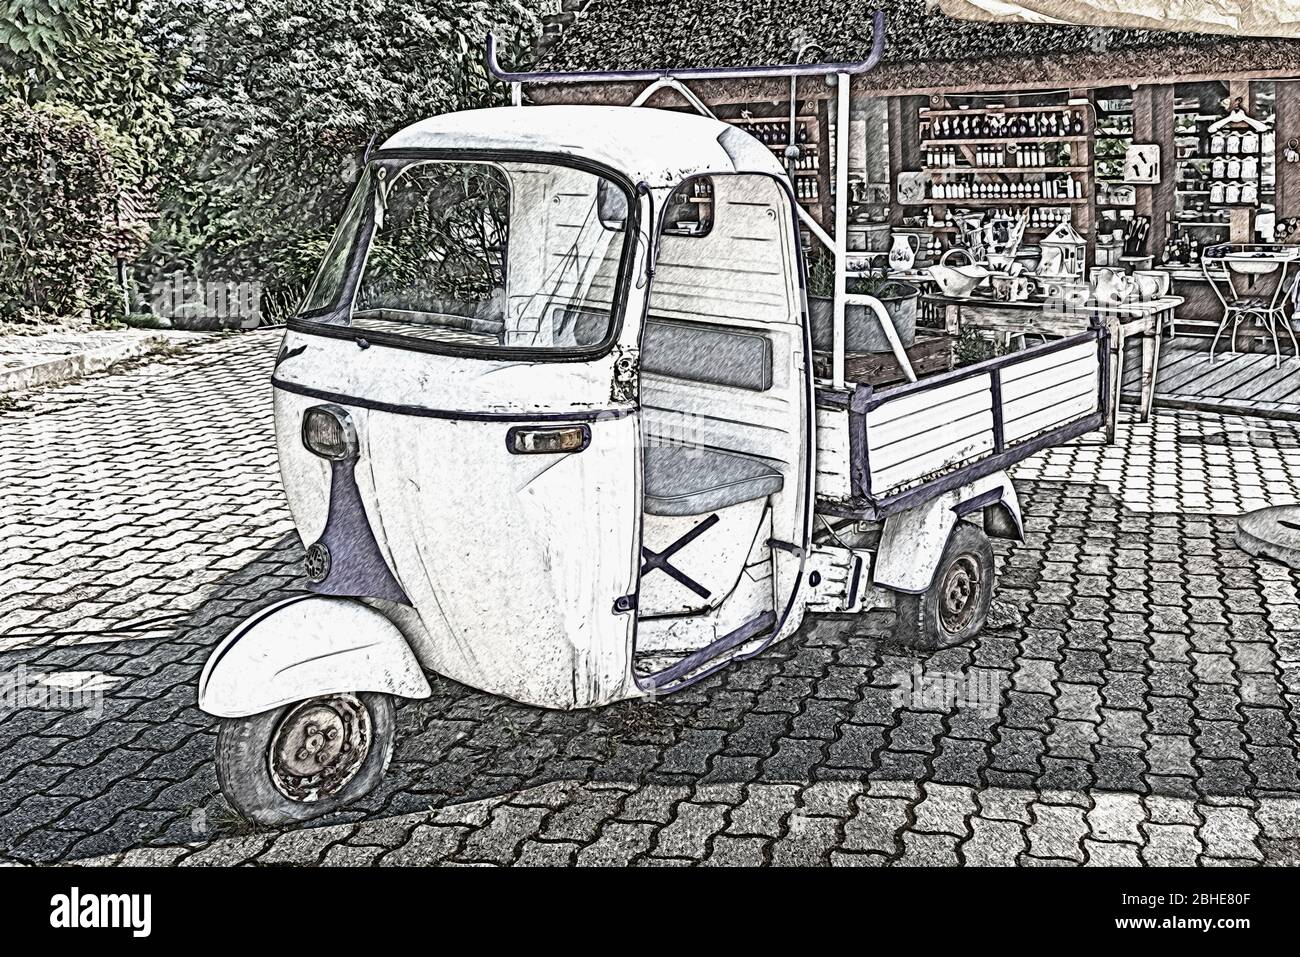 L'ancien véhicule commercial léger Piaggio Ape fait partie de la décoration d'une boutique, la vente de produits de lavande, Tihany, Hongrie, Europe Banque D'Images